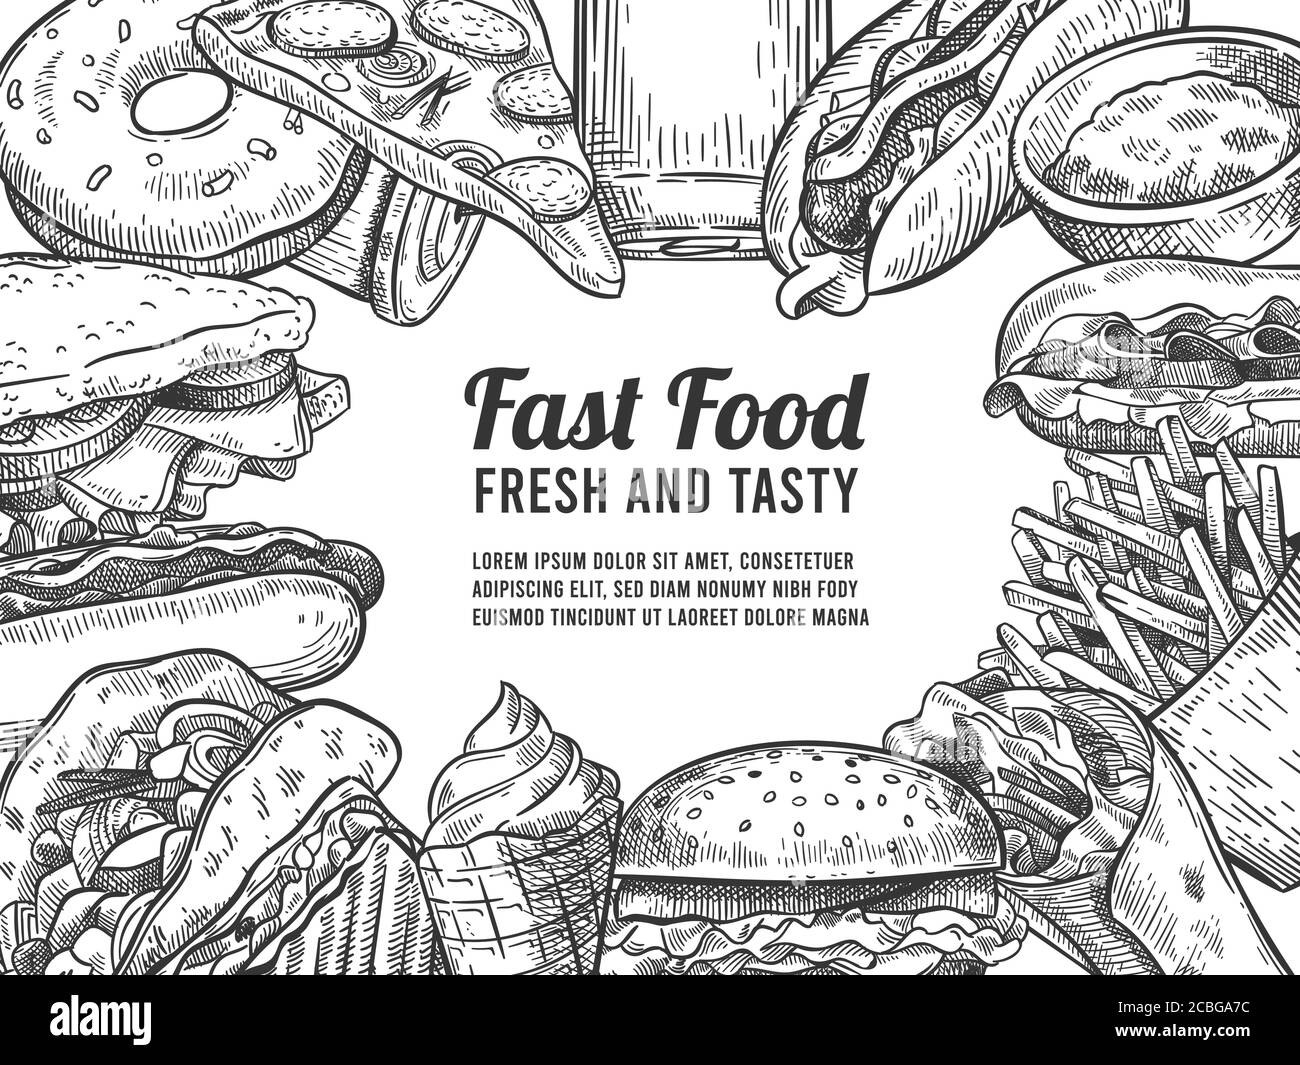 Fast Food-Skizze. Handgezogener Hotdog, Pizza und Donuts, Burger und Pommes, Eis und Cola. Junk-Food, Sonderangebot Vektor-Poster Stock Vektor